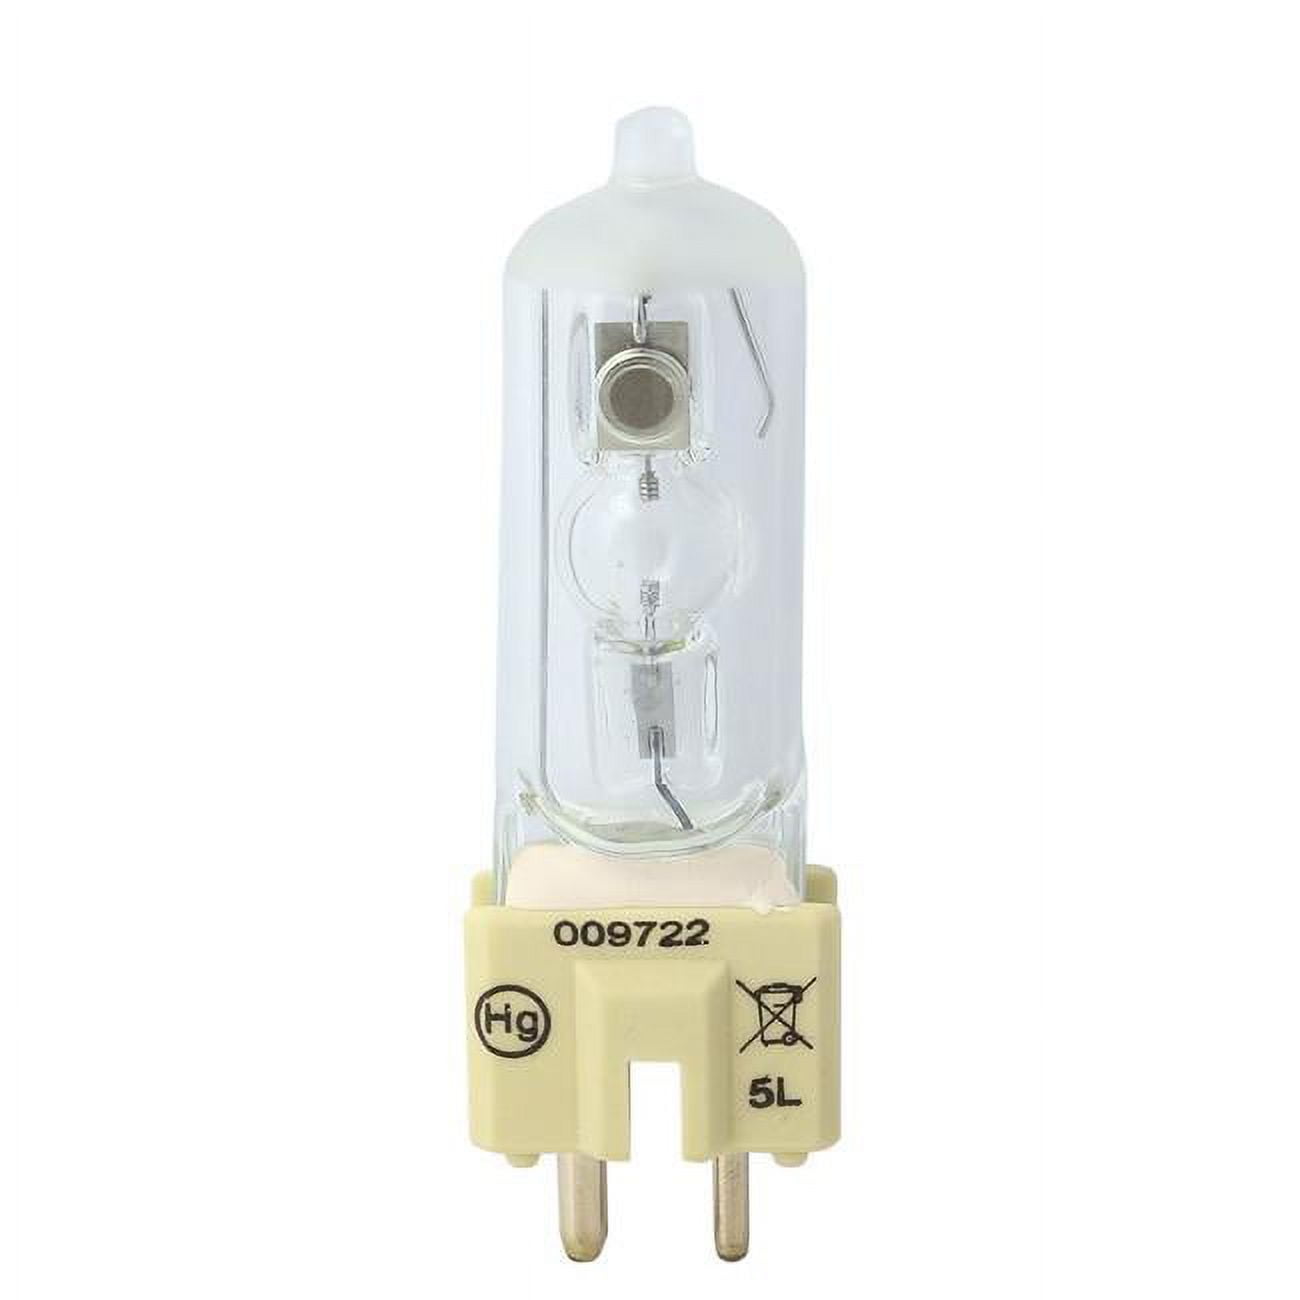 Dny-170233 Msr Hot Restrike Msr 200 Hr Light Bulb